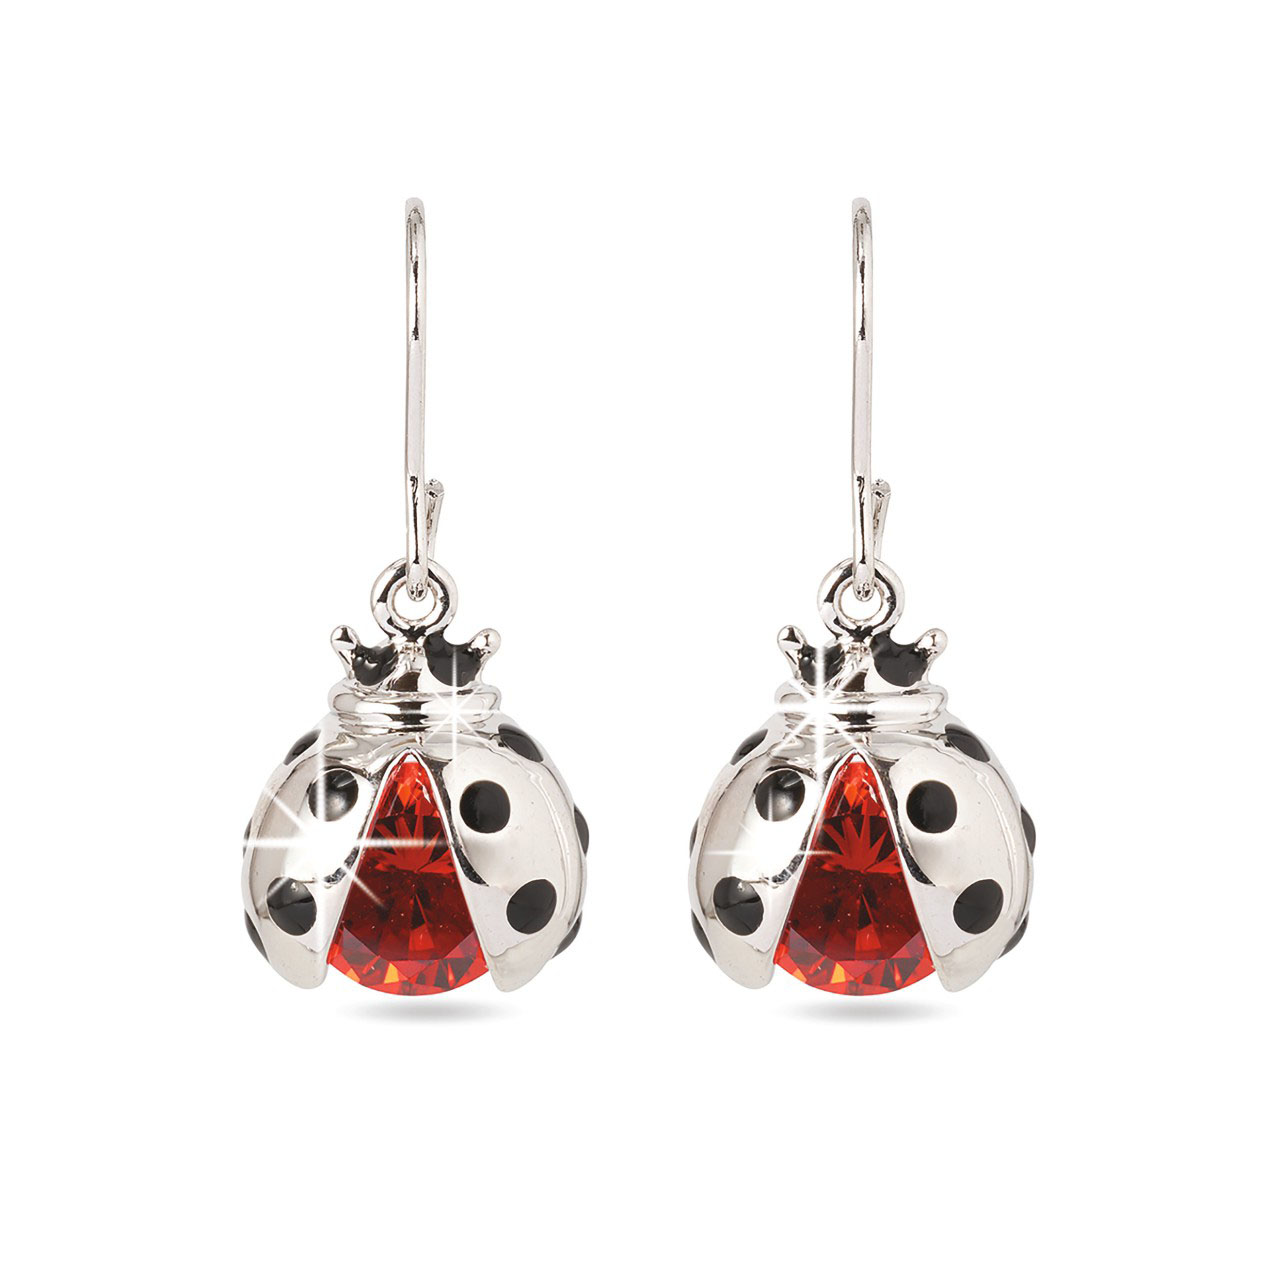 Ladybird Pendant and Earrings Set